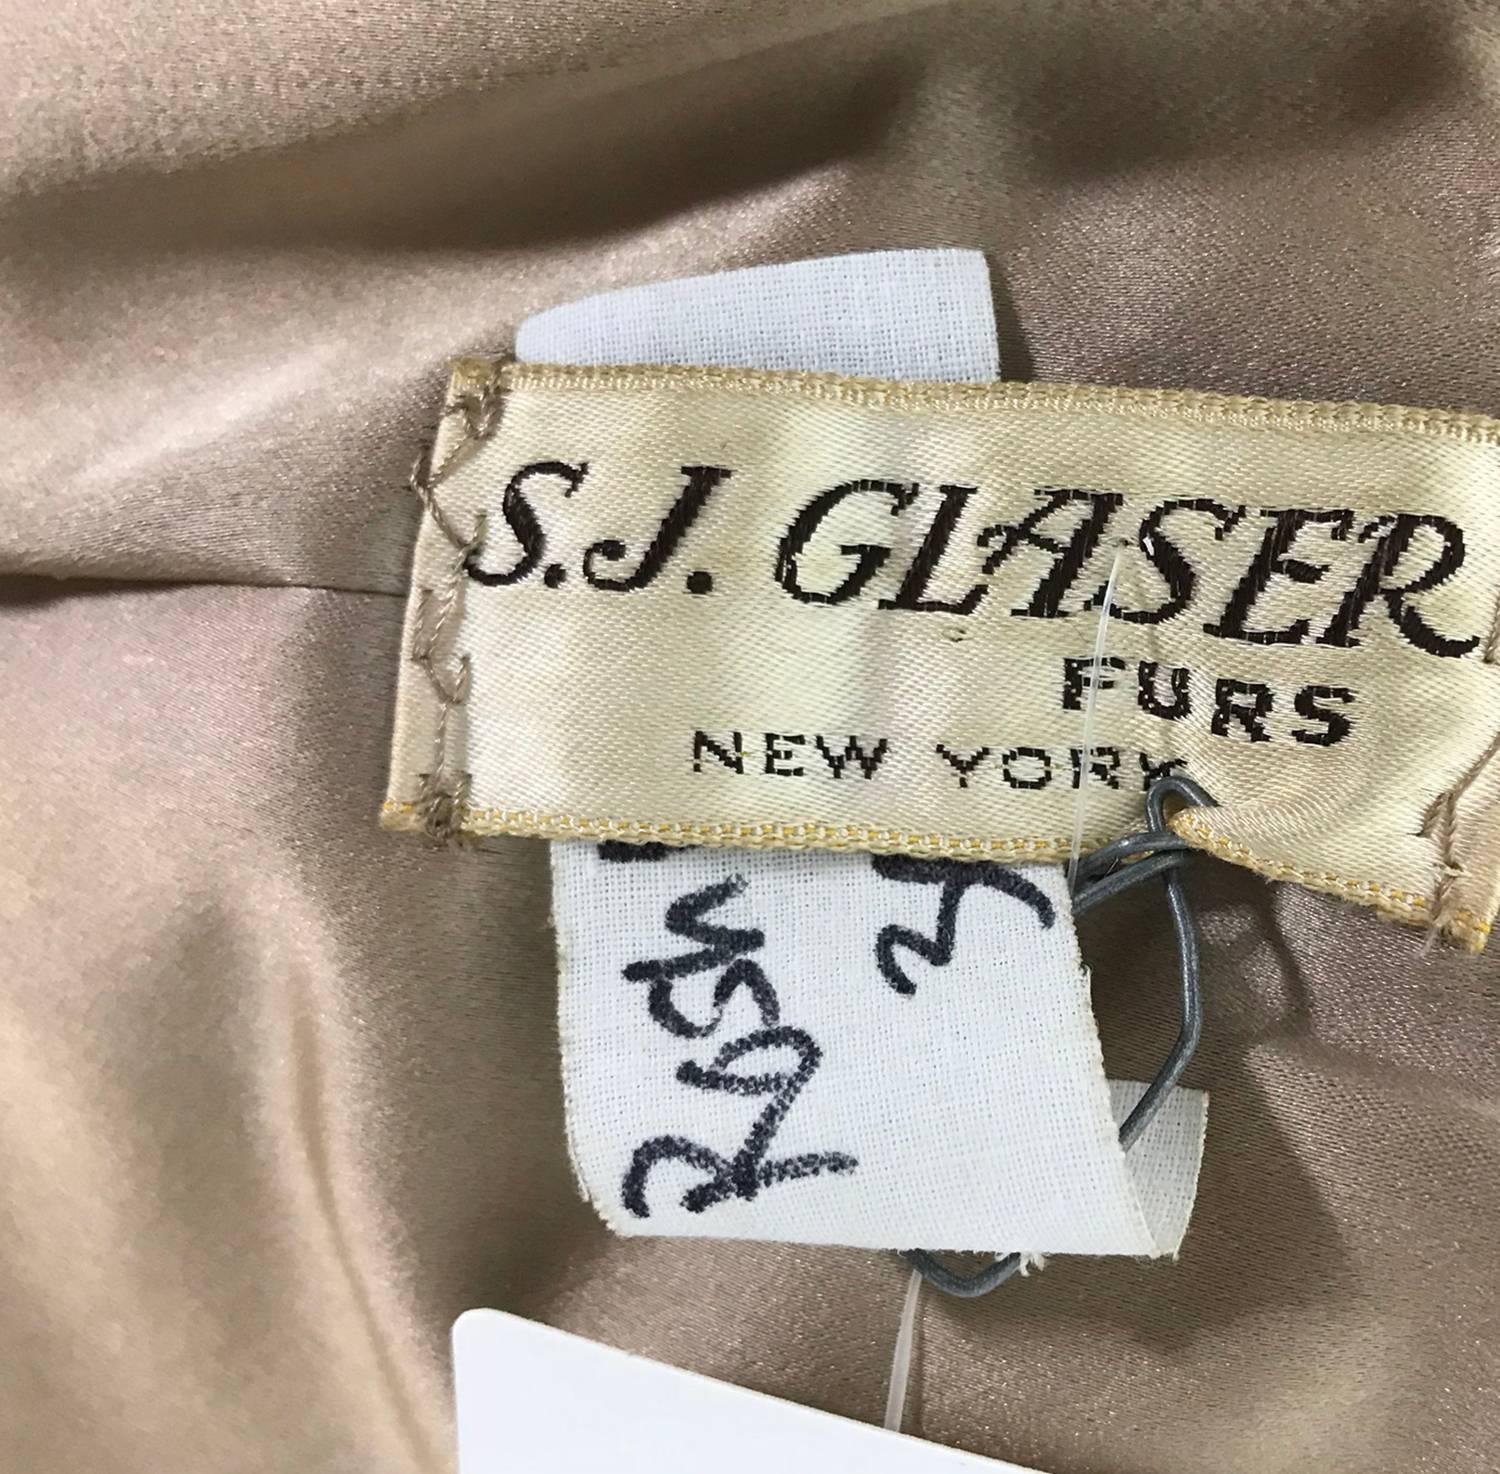  Natural sable jacket S J Glaser furs New York 1960s 3